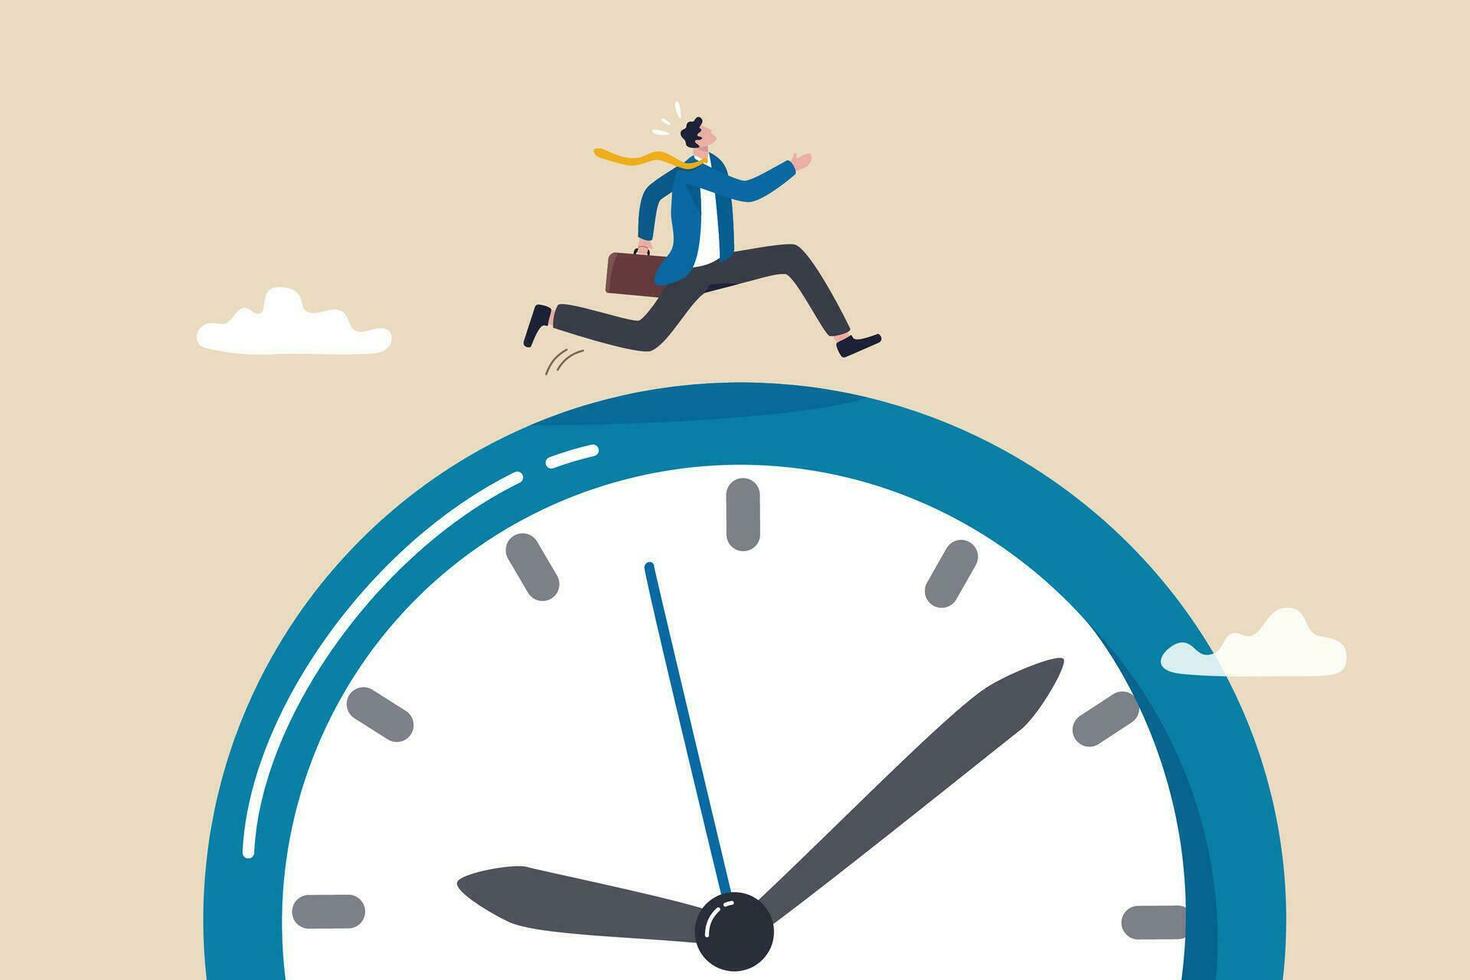 tid springa ut, deadline eller skynda till gå till de kontor sent, brådskande karaktär eller bestämning till Avsluta arbete snabb, betonade eller ångest till komplett arbete begrepp, skynda affärsman springa snabb på tid springa ut klocka. vektor